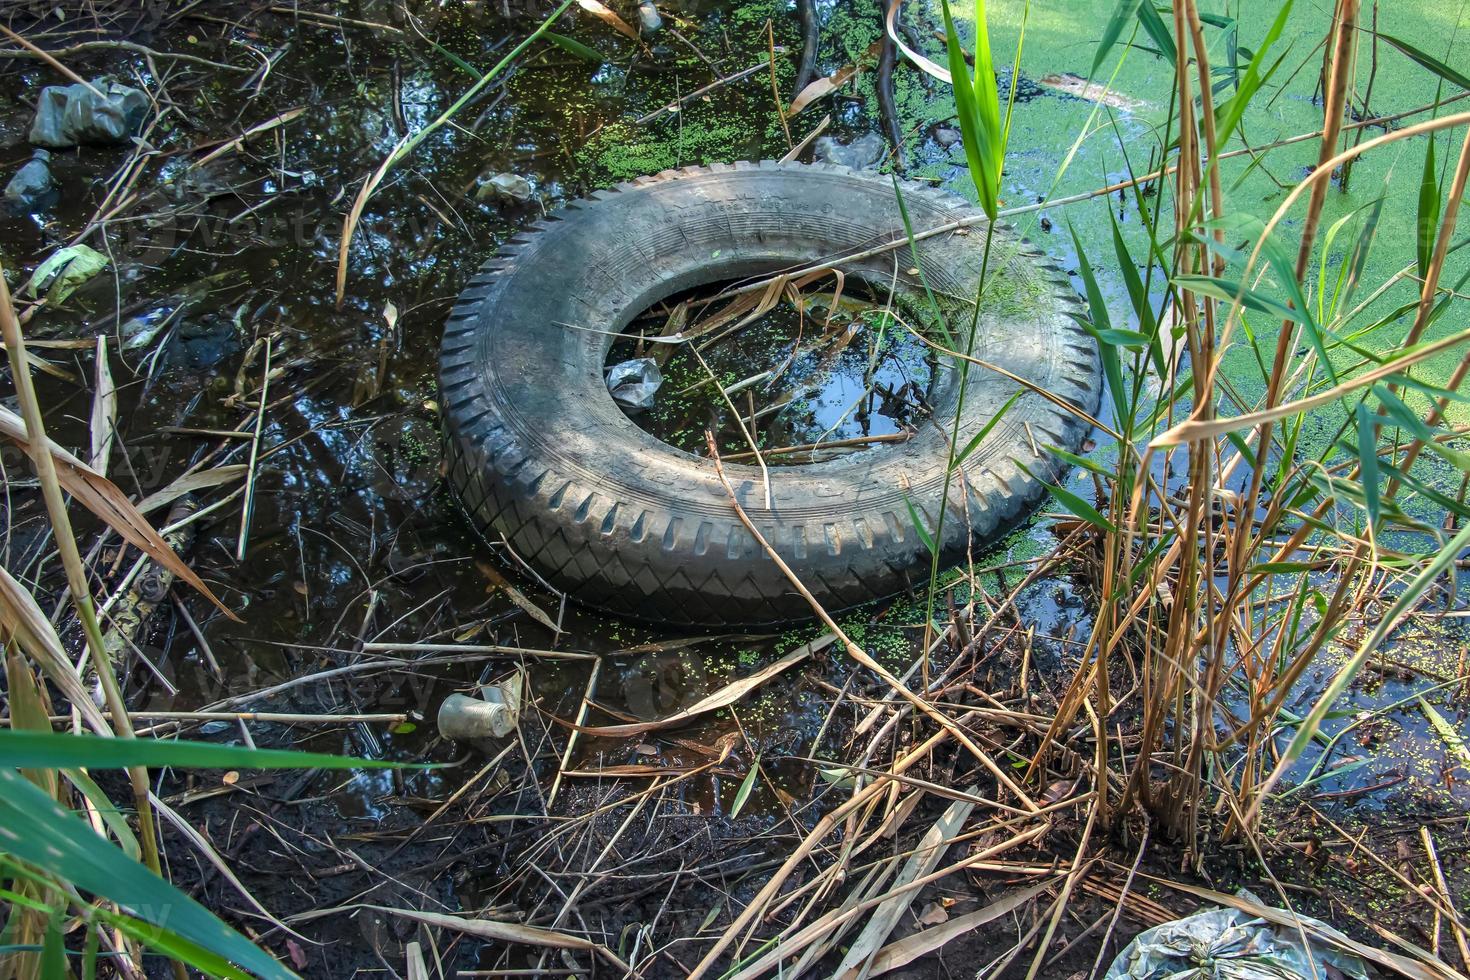 eendekroos en plastic, blik, rubber vuilnis in de rivier. de concept van de ecologisch probleem van milieu vervuiling. foto